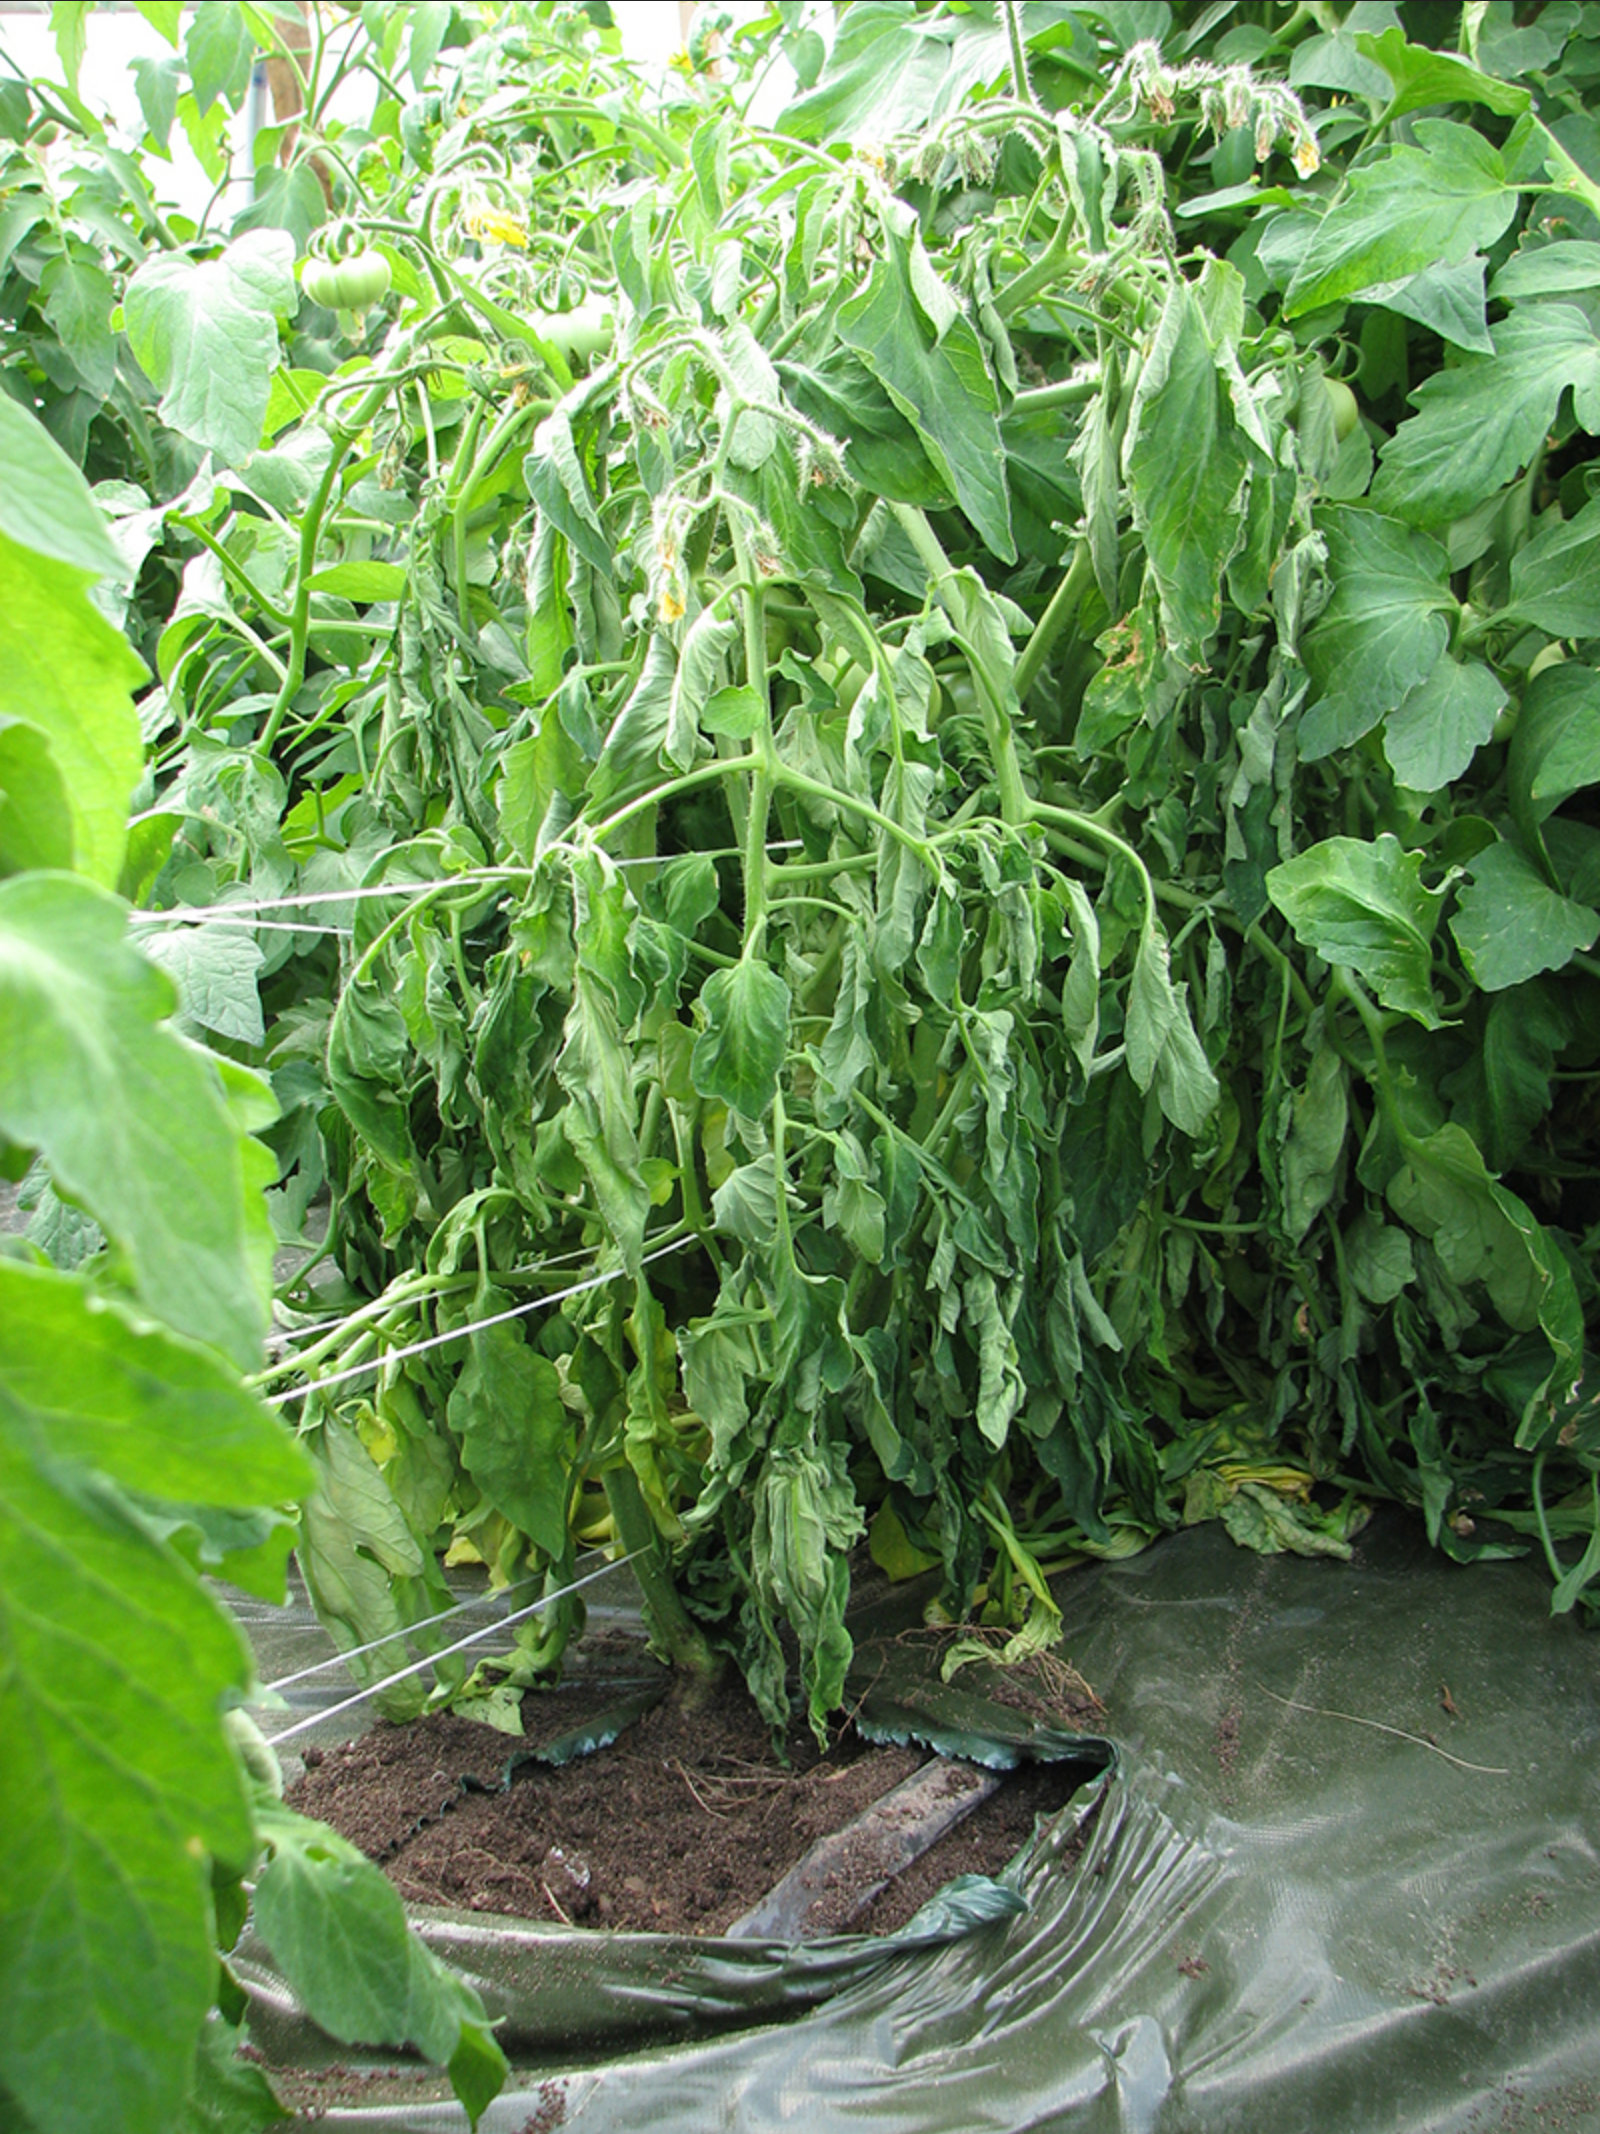 Tomato plant with fusarium